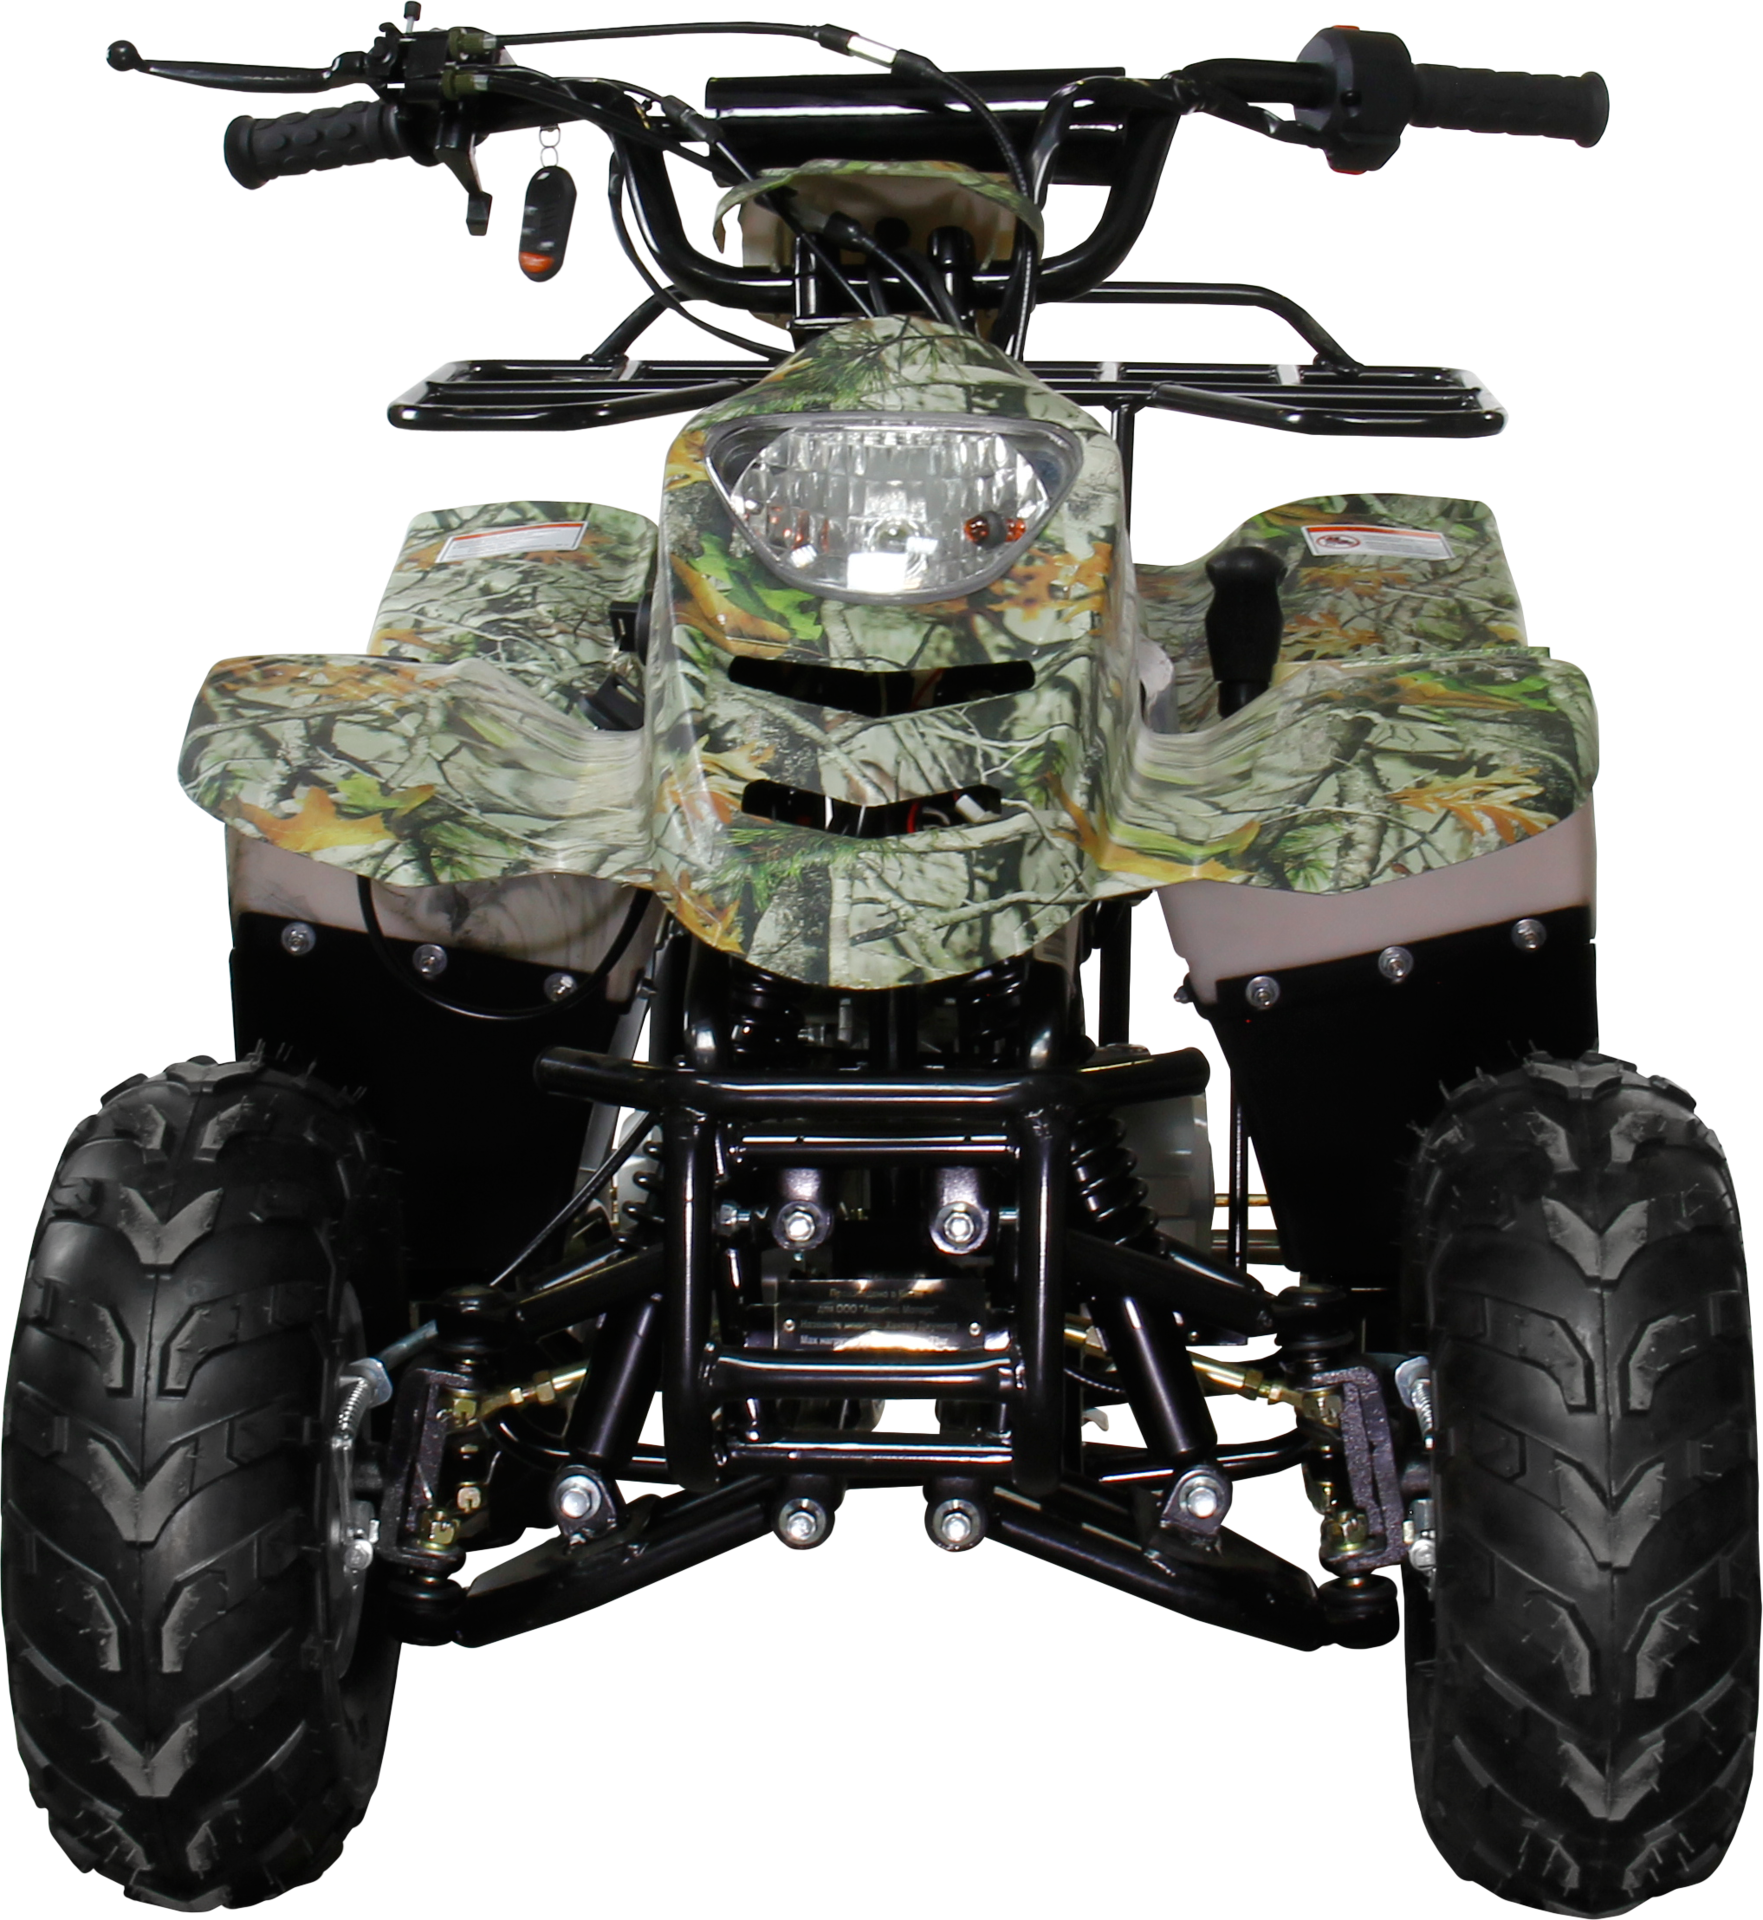 ATV, quad